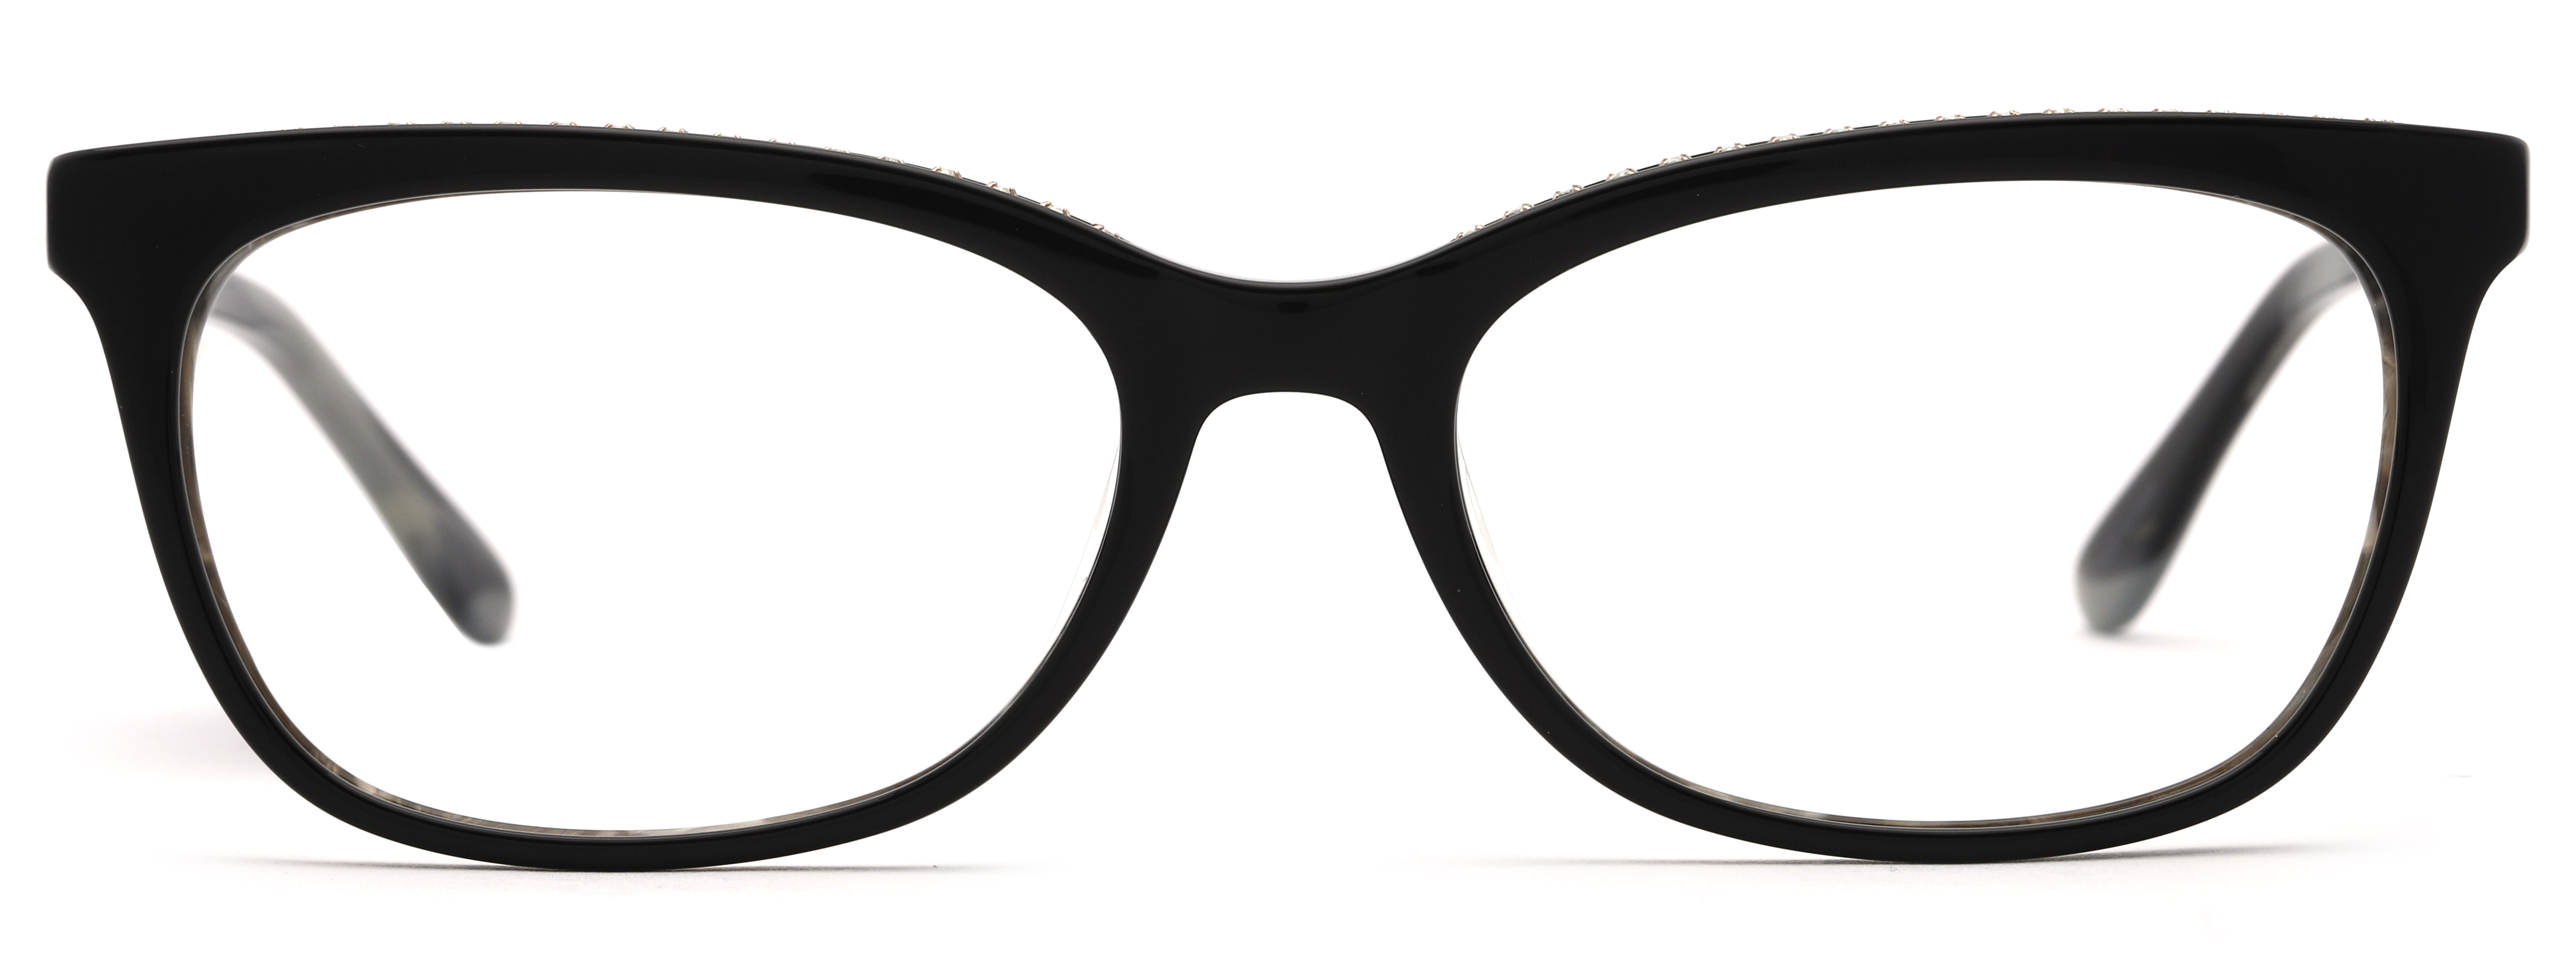 Designer Frames for Less Women's Rx'able Eyeglasses, Black - image 2 of 13